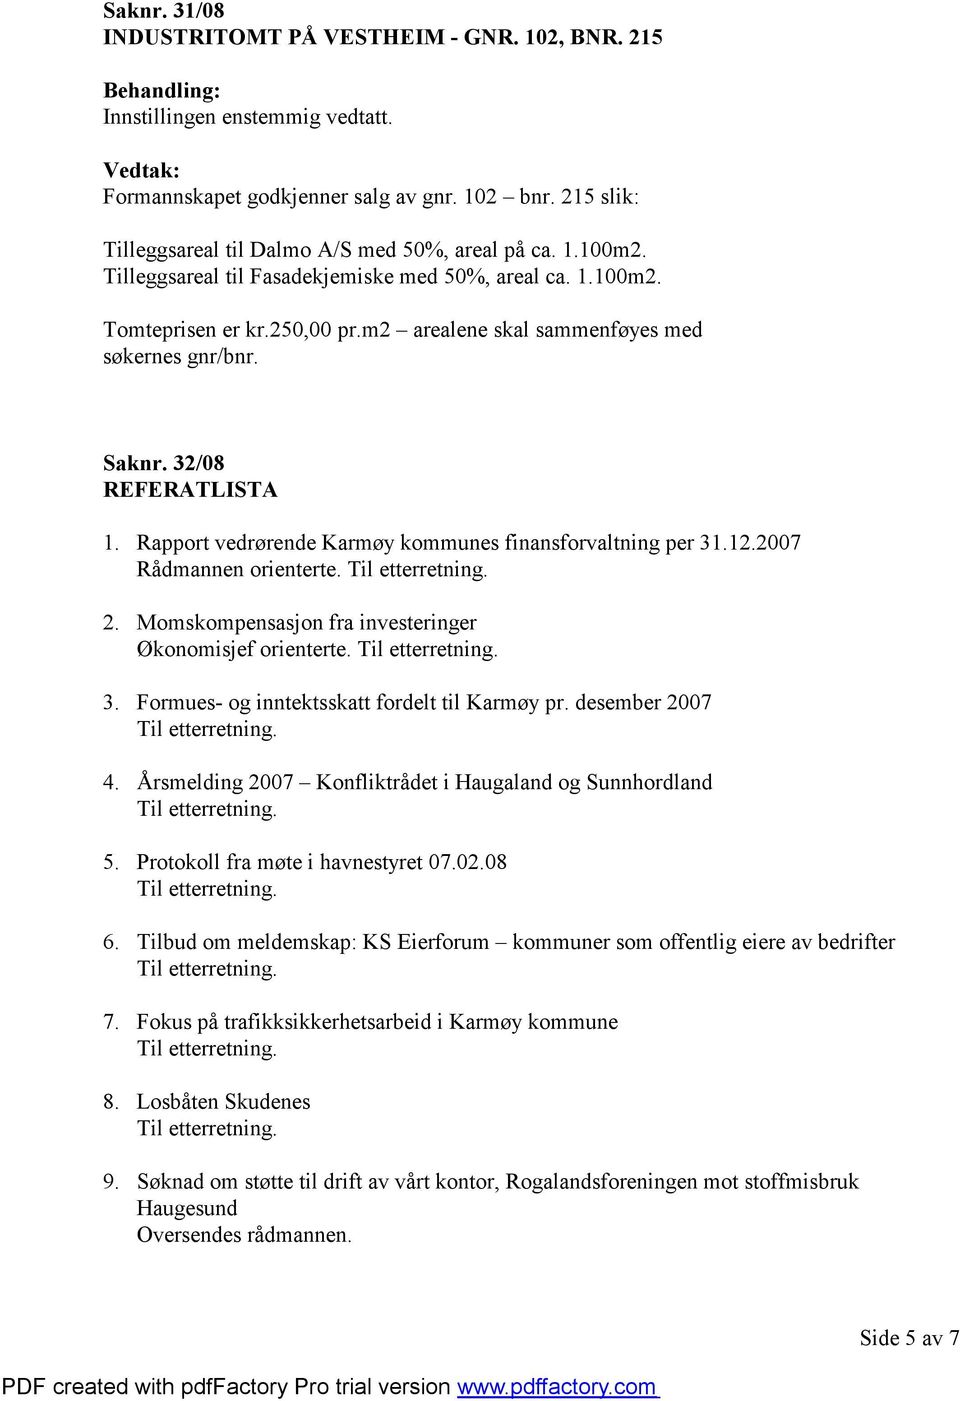 Rapport vedrørende Karmøy kommunes finansforvaltning per 31.12.2007 Rådmannen orienterte. 2. Momskompensasjon fra investeringer Økonomisjef orienterte. 3. Formues- og inntektsskatt fordelt til Karmøy pr.